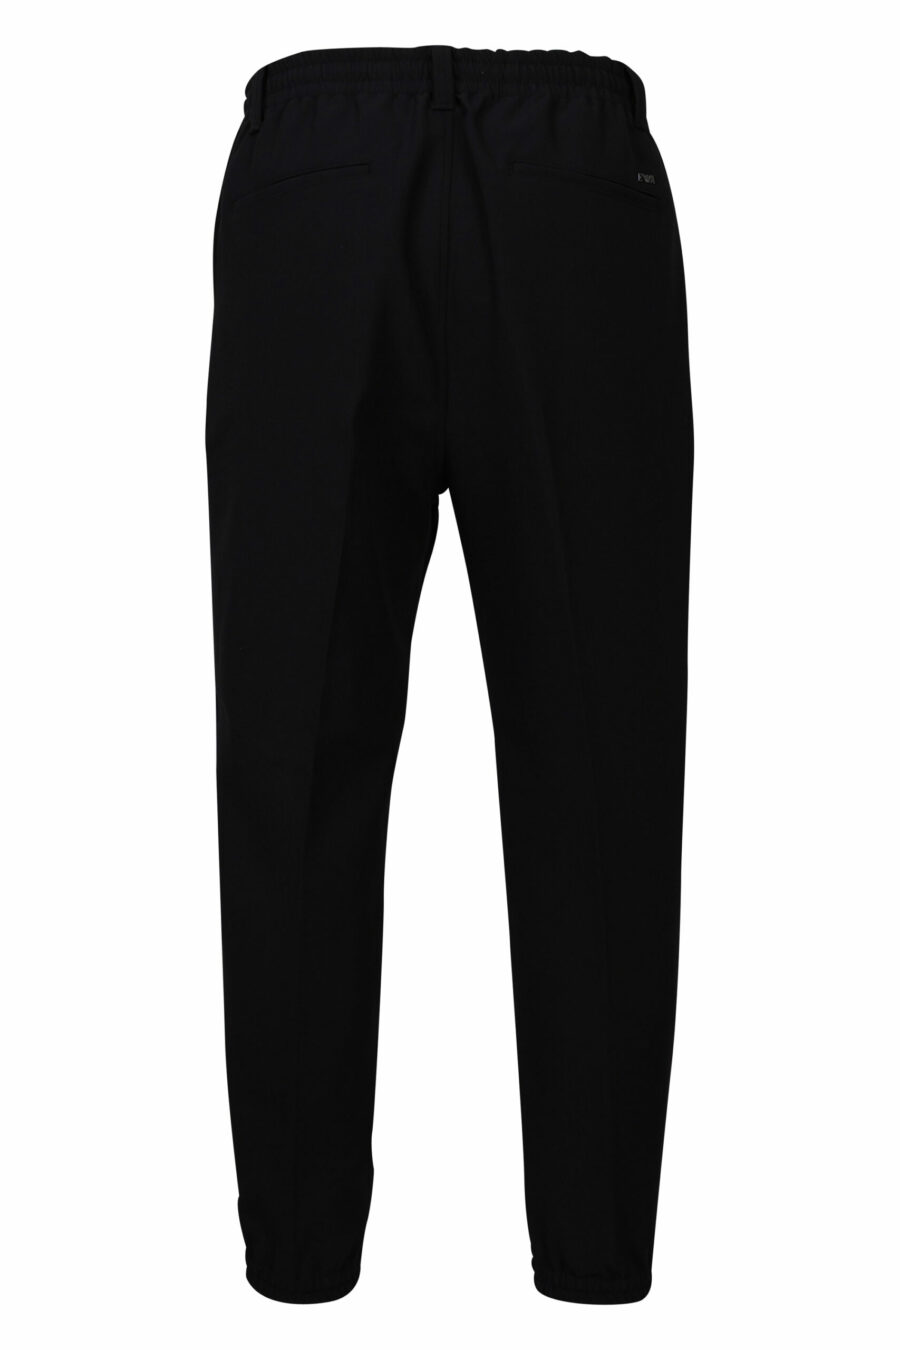 Pantalón de vestir negro con minilogo - 8057767410278 2 scaled